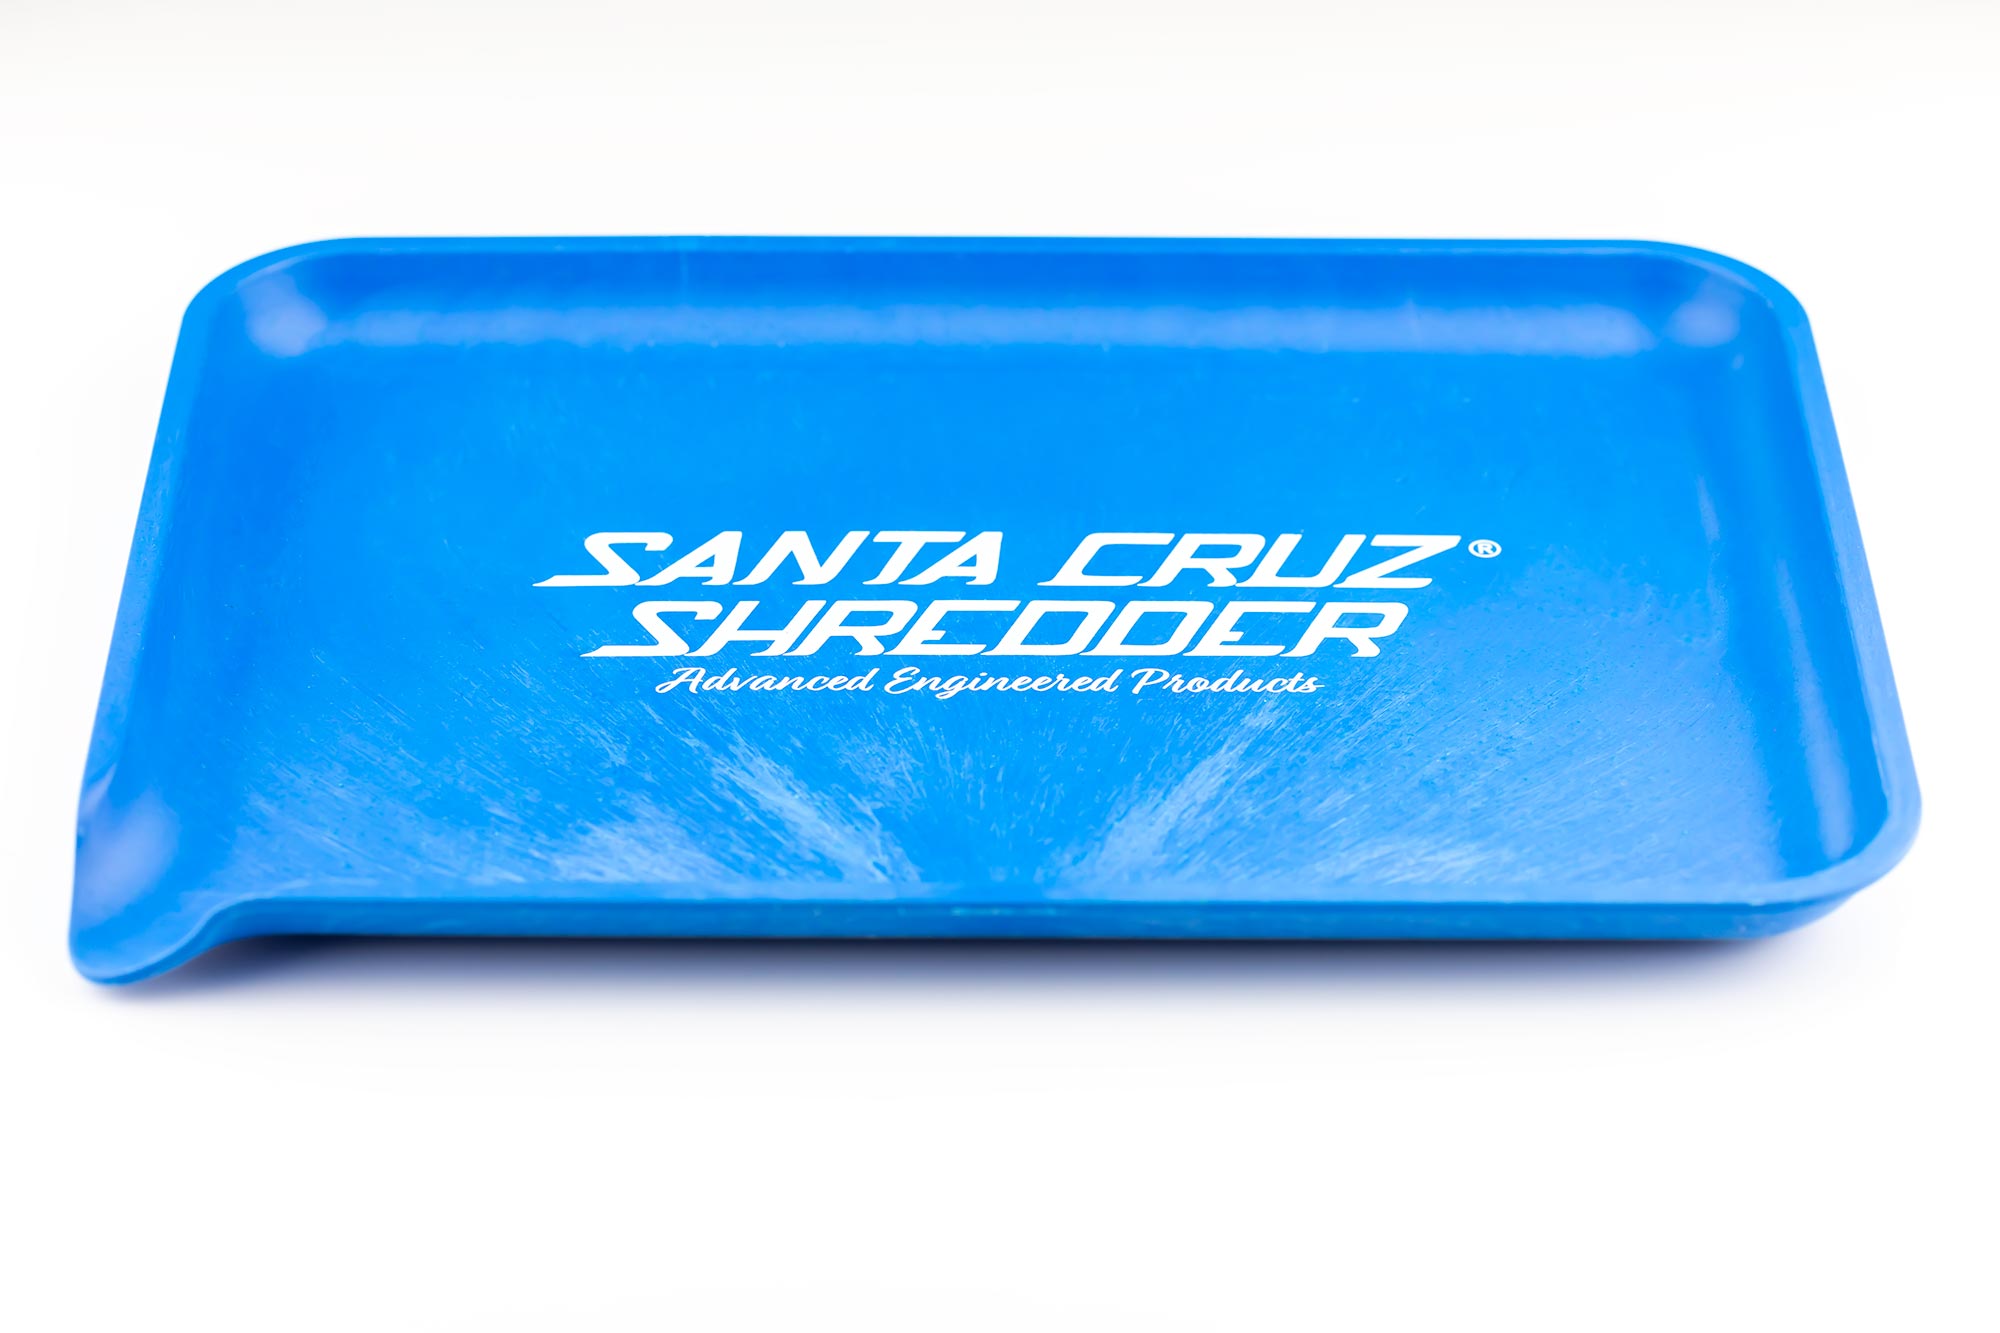 SCS Large Hemp Tray - Santa Cruz Shredder